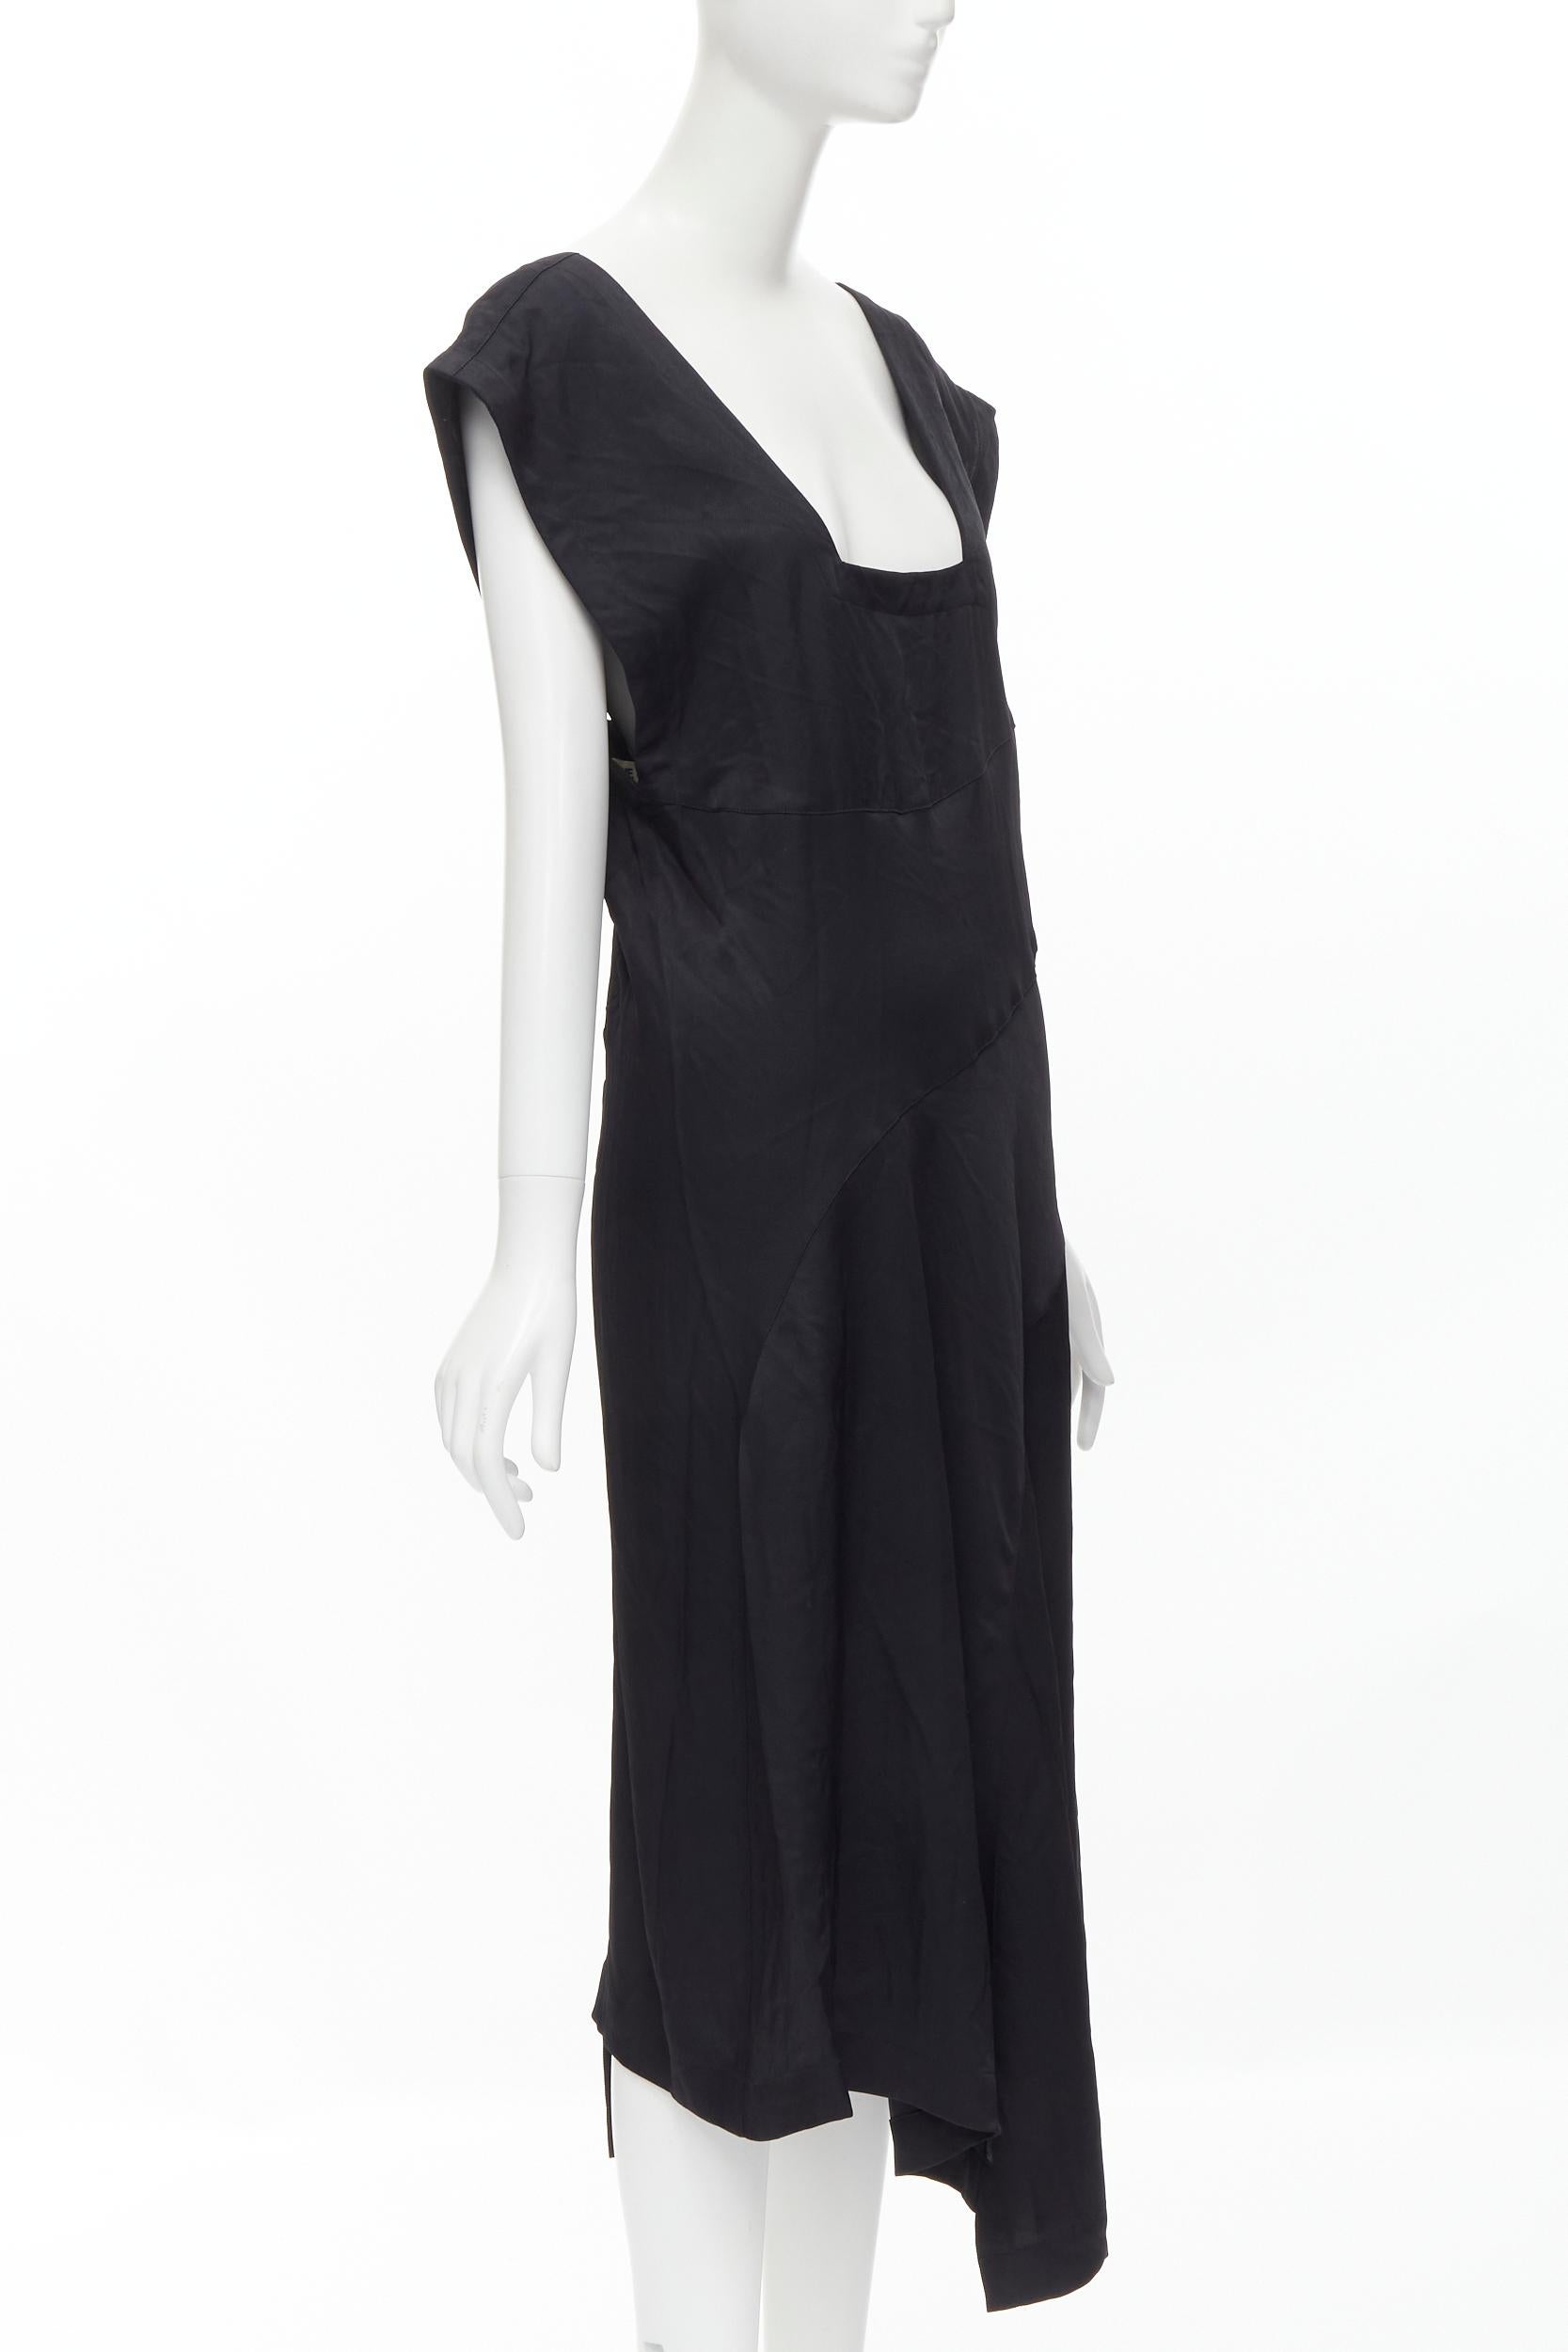 Black COMME DES GARCONS Vintage 1980s square neck oversized bias cut dress For Sale